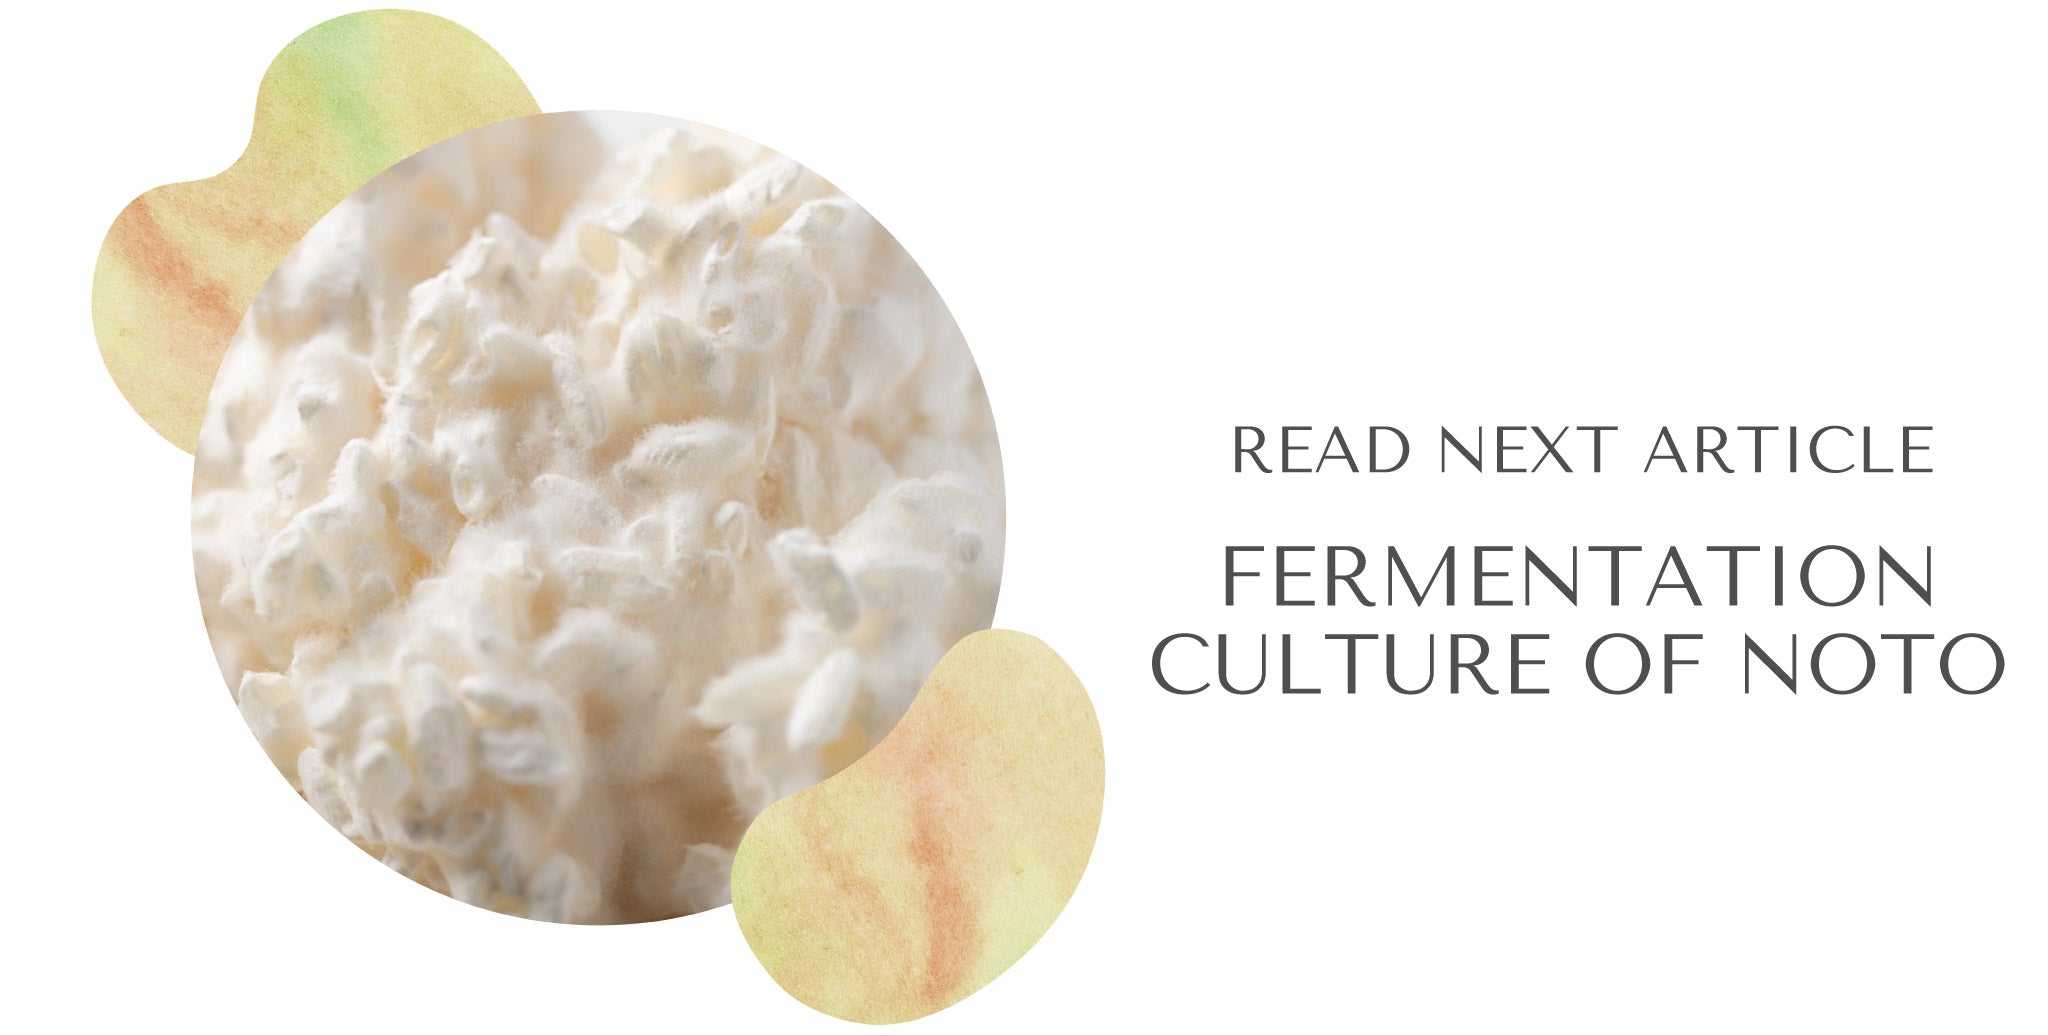 次の記事、発酵王国と呼ばれるほど発酵文化が盛んな能登半島の発酵文化について